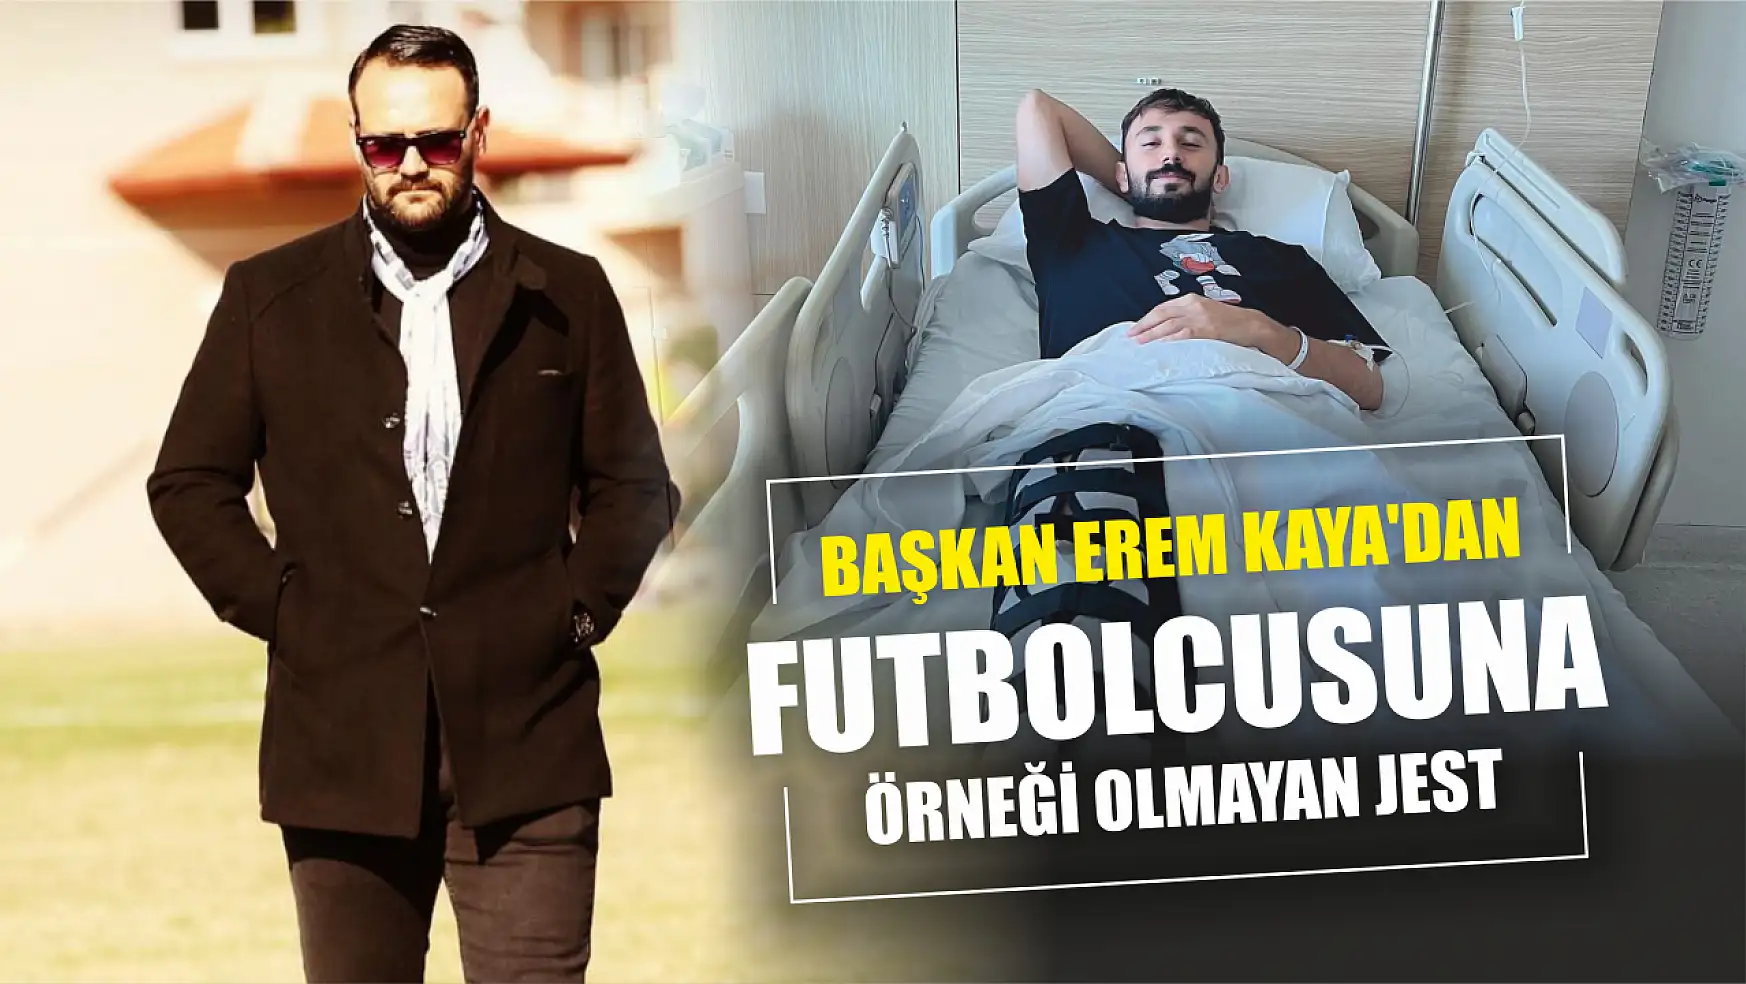 Başkan Erem Kaya'dan Futbolcusuna Örneği Olmayan Jest